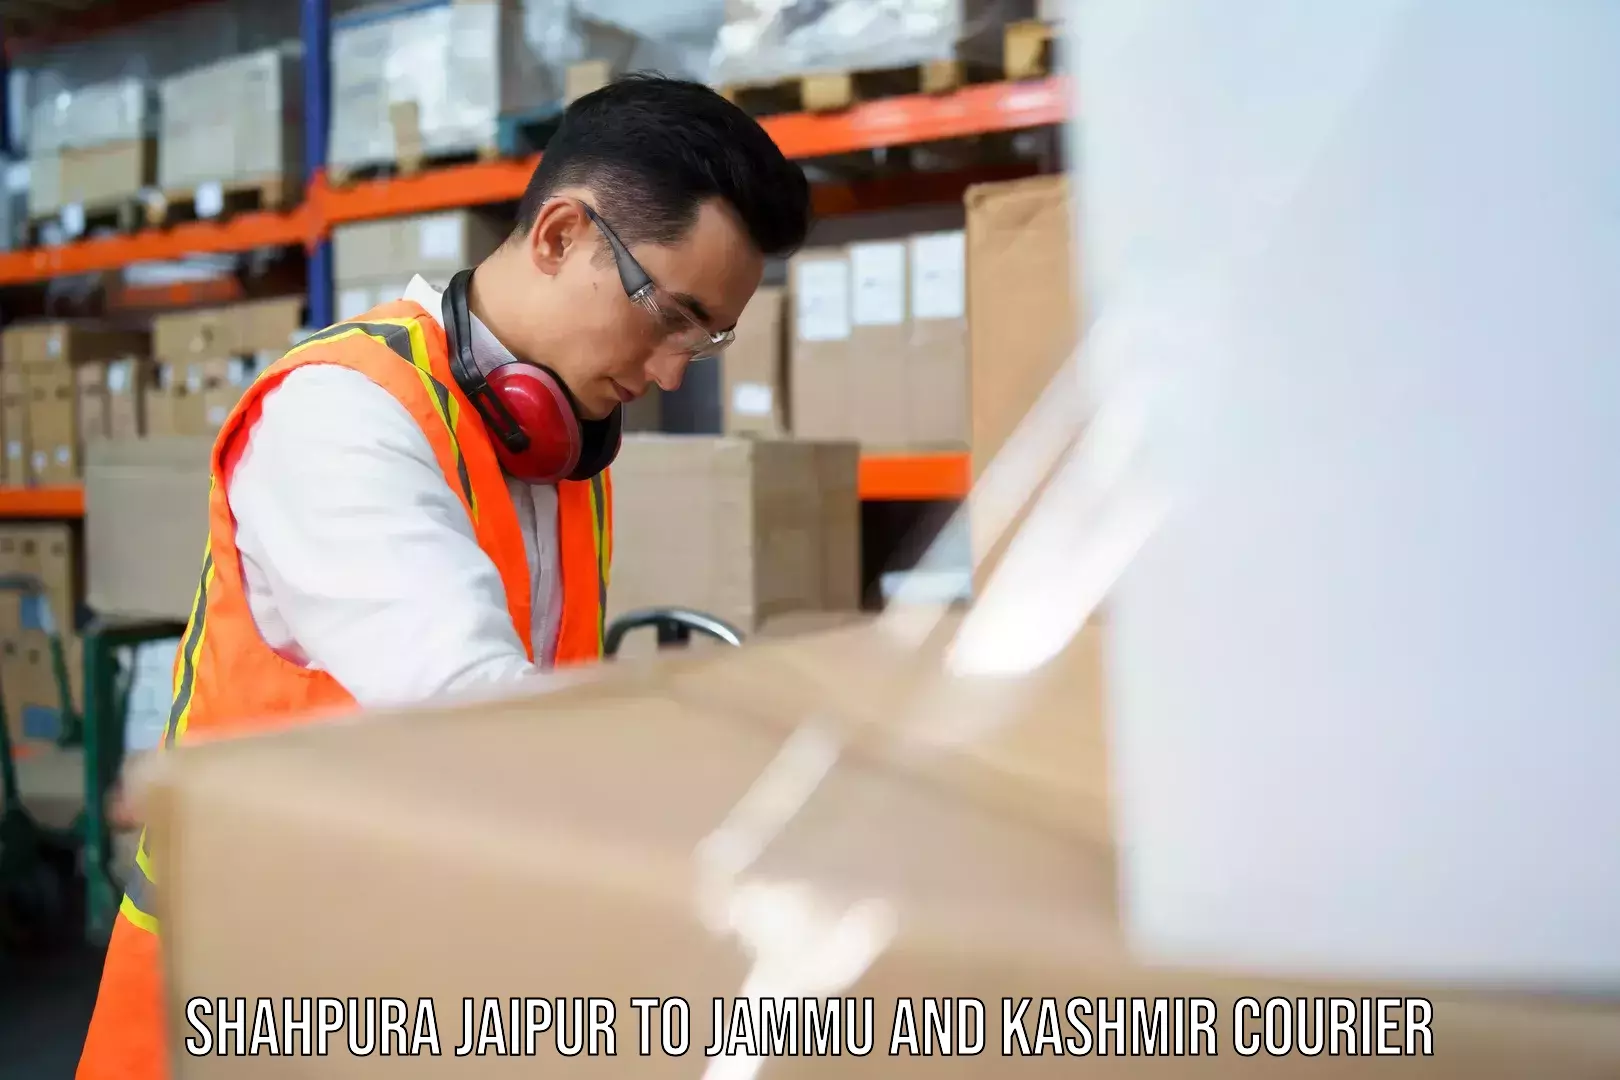 Global shipping solutions Shahpura Jaipur to Parsa